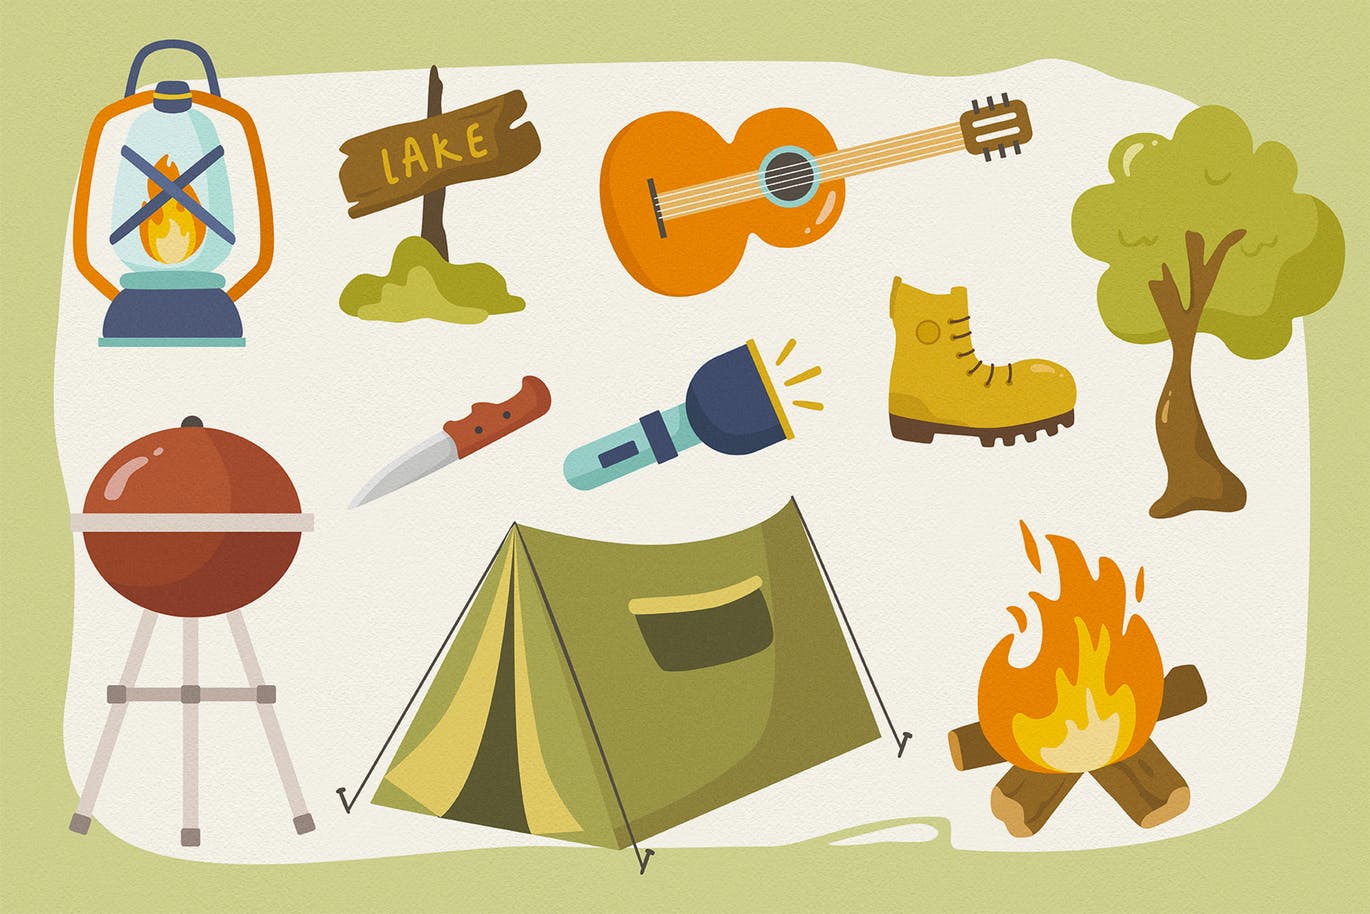 夏日营地主题矢量手绘剪贴画图案素材 Summer Camp Vector Clipart Pack插图(2)